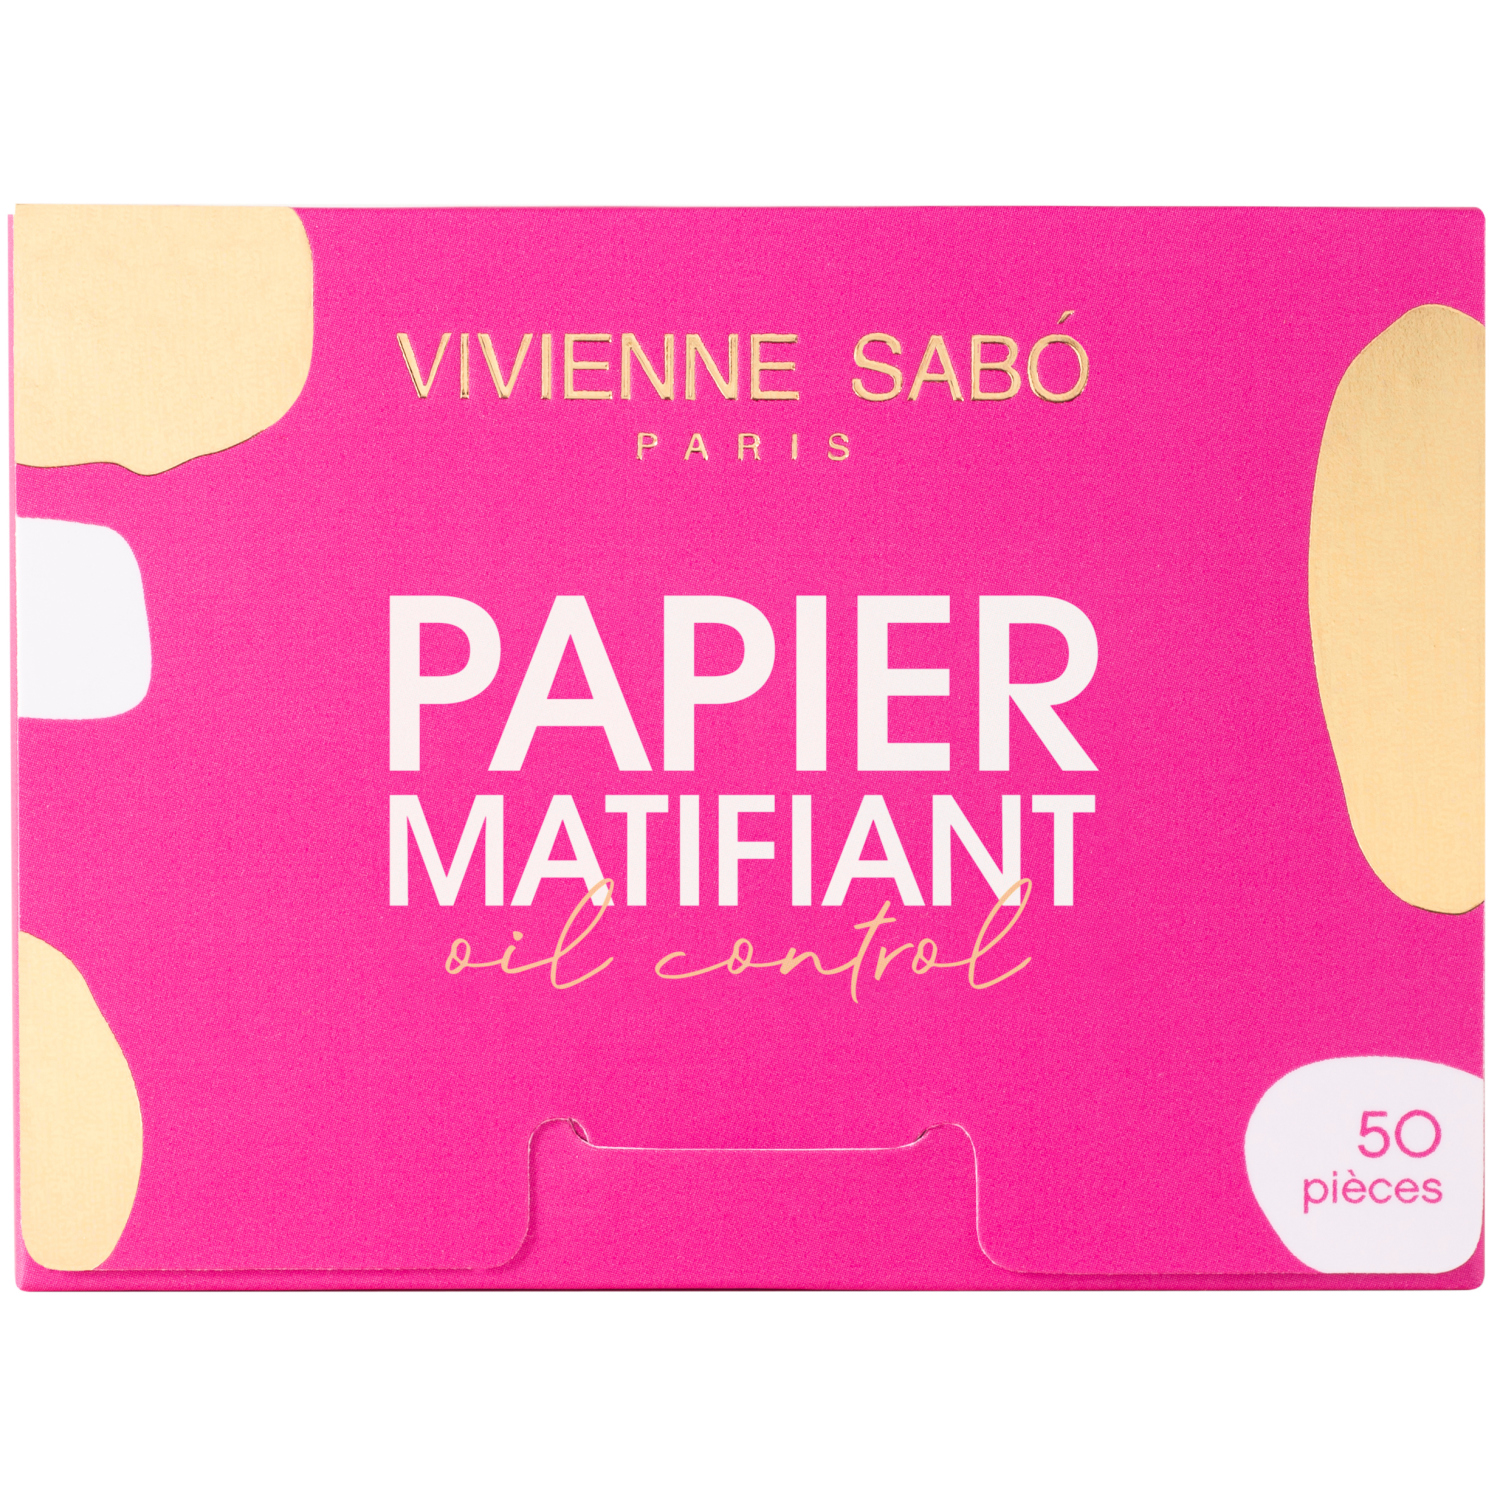 Матирующие салфетки Vivienne Sabo Papier Matifiant, моментальное удаление жирного блеска, прозрачно-розоватые, 50шт. матирующие салфетки для лица like a girlboss 50 шт